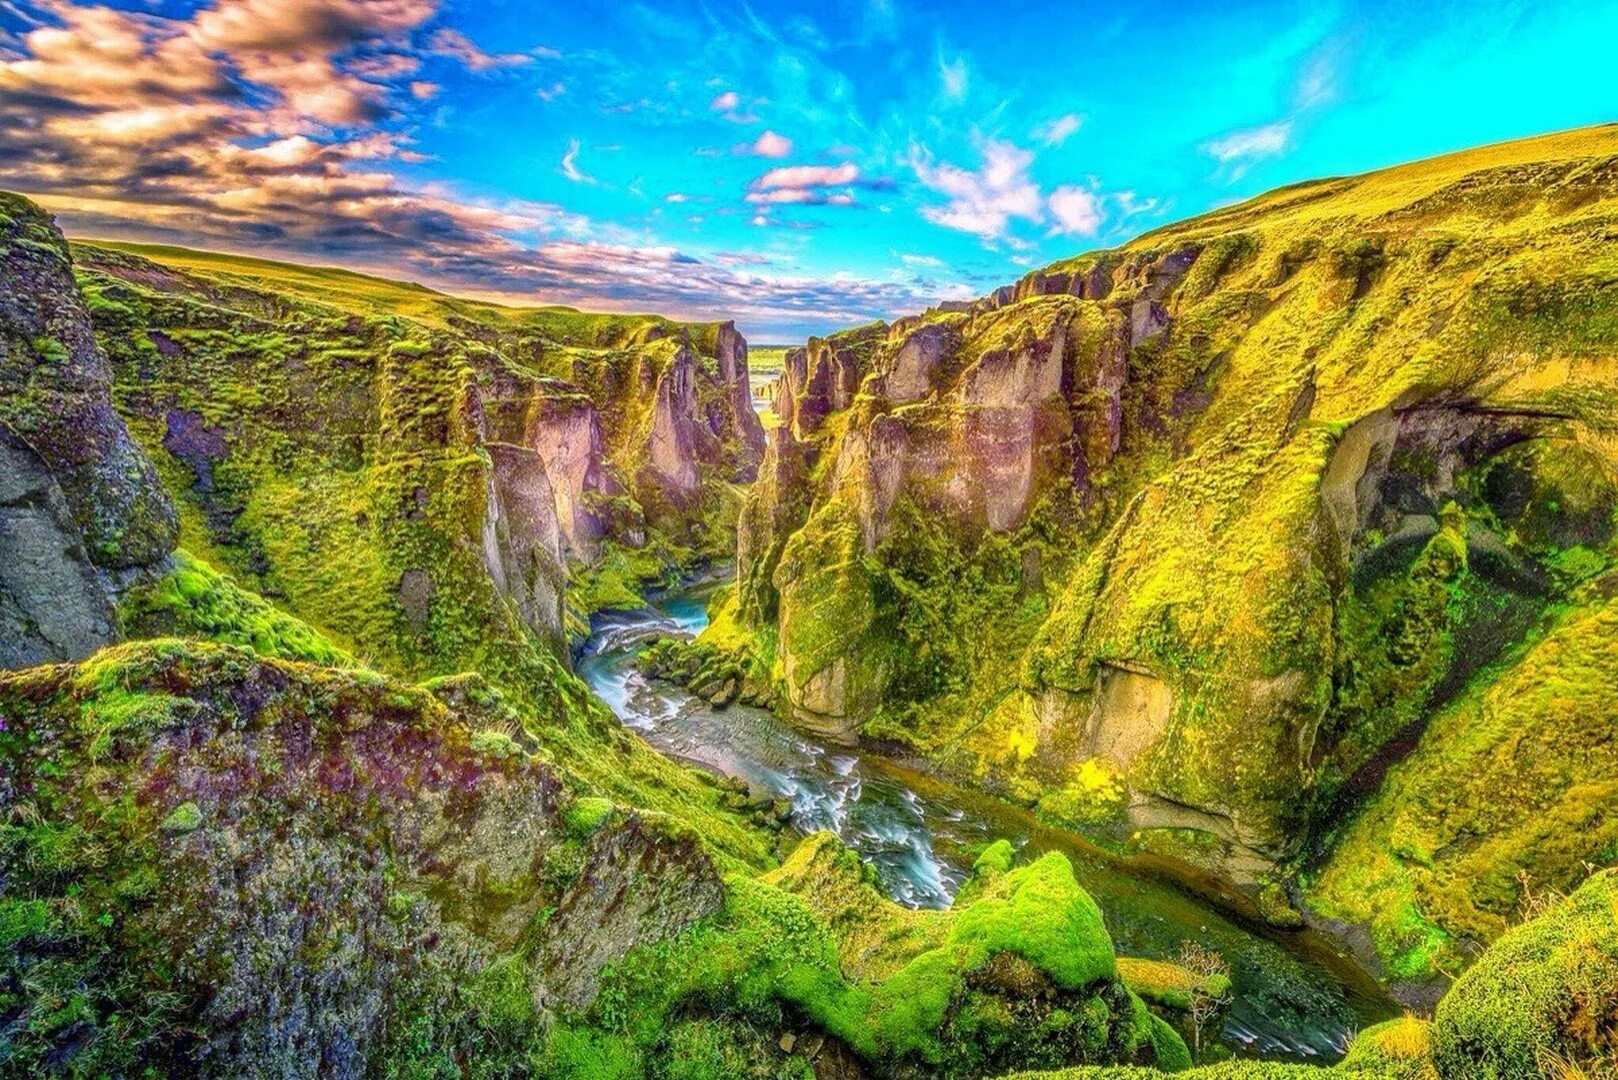 Прекрасные места 2020. Каньон Фьядрарглйуфур Исландия. Fjaðrárgljúfur каньон, Исландия. Каньон мулаглюфур Исландия. Каньон Фьядрарглйуфур туристы.